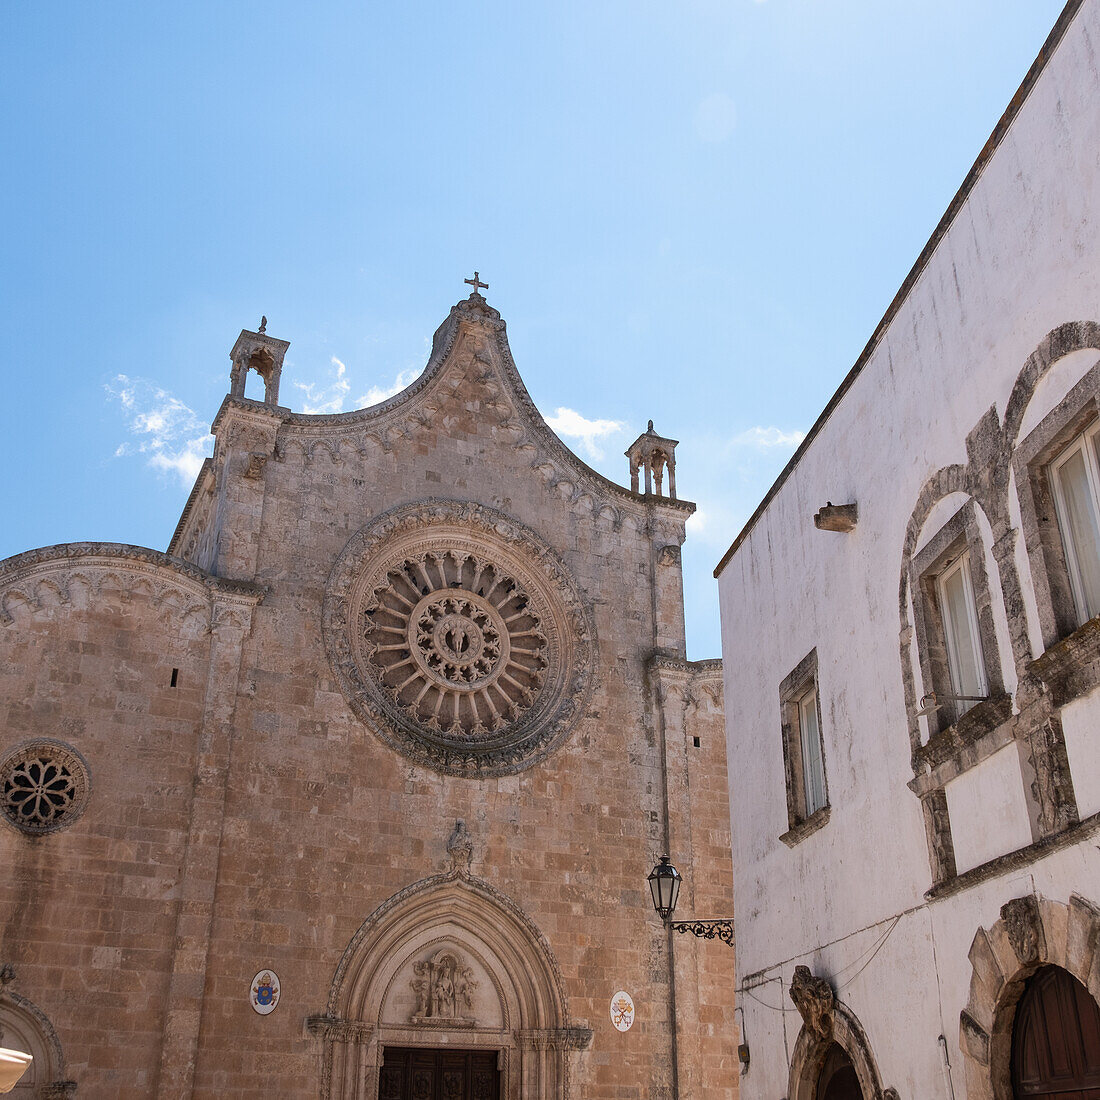 Italien, Apulien, Provinz Brindisi, Ostuni, Fassade der gotischen Kathedrale